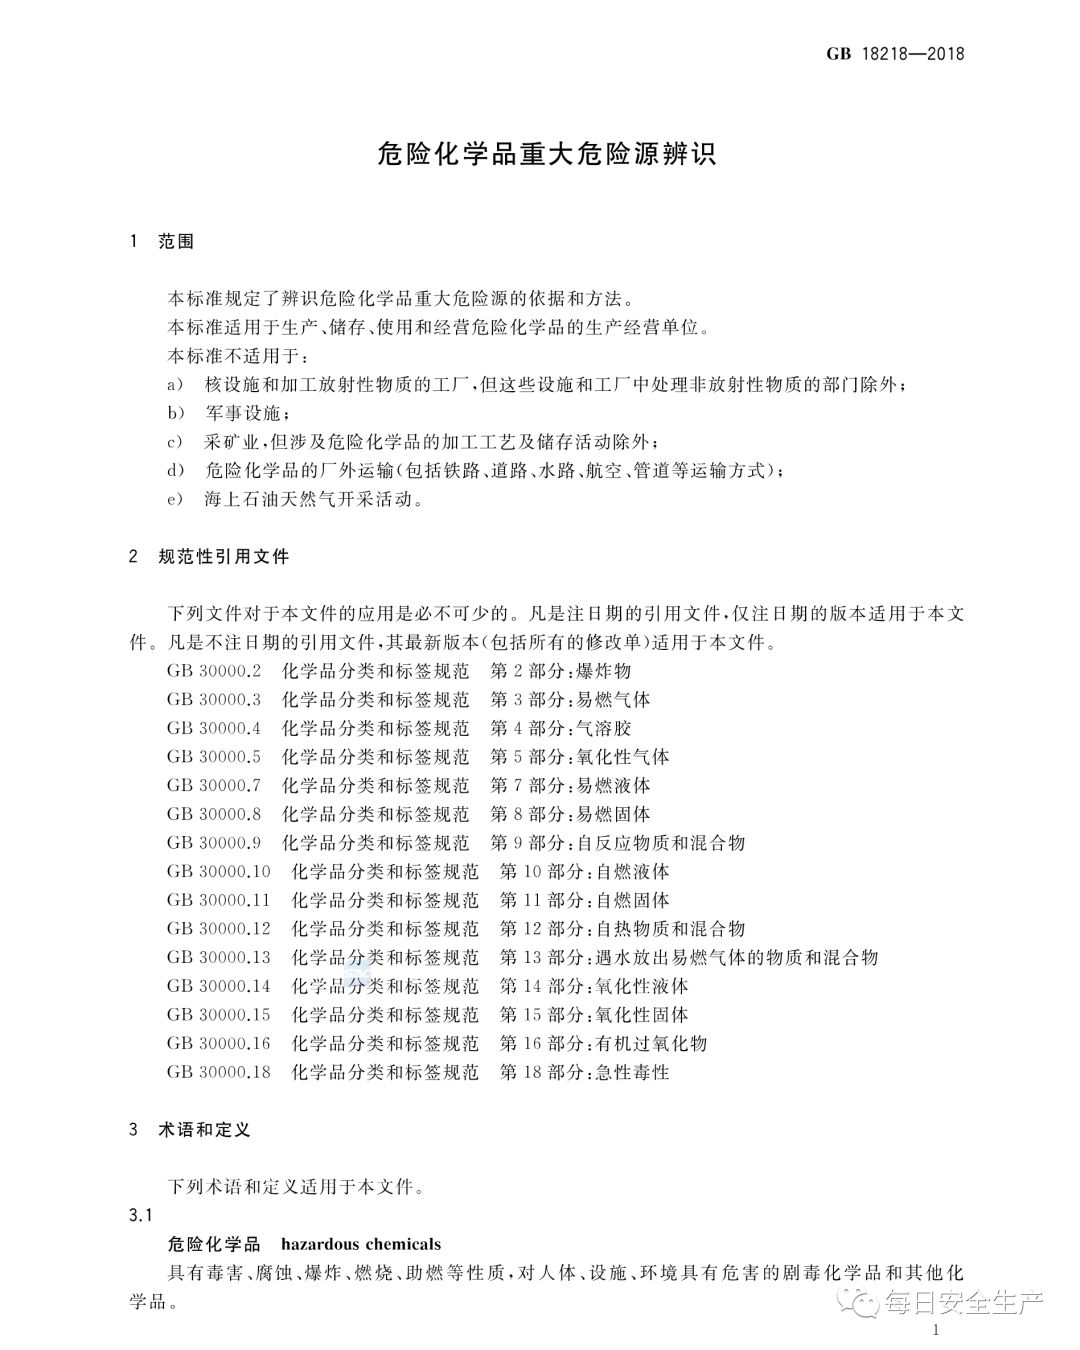 中国安科院关于危险化学品重大危险源罐区单元划分的咨询请求的复函(图6)